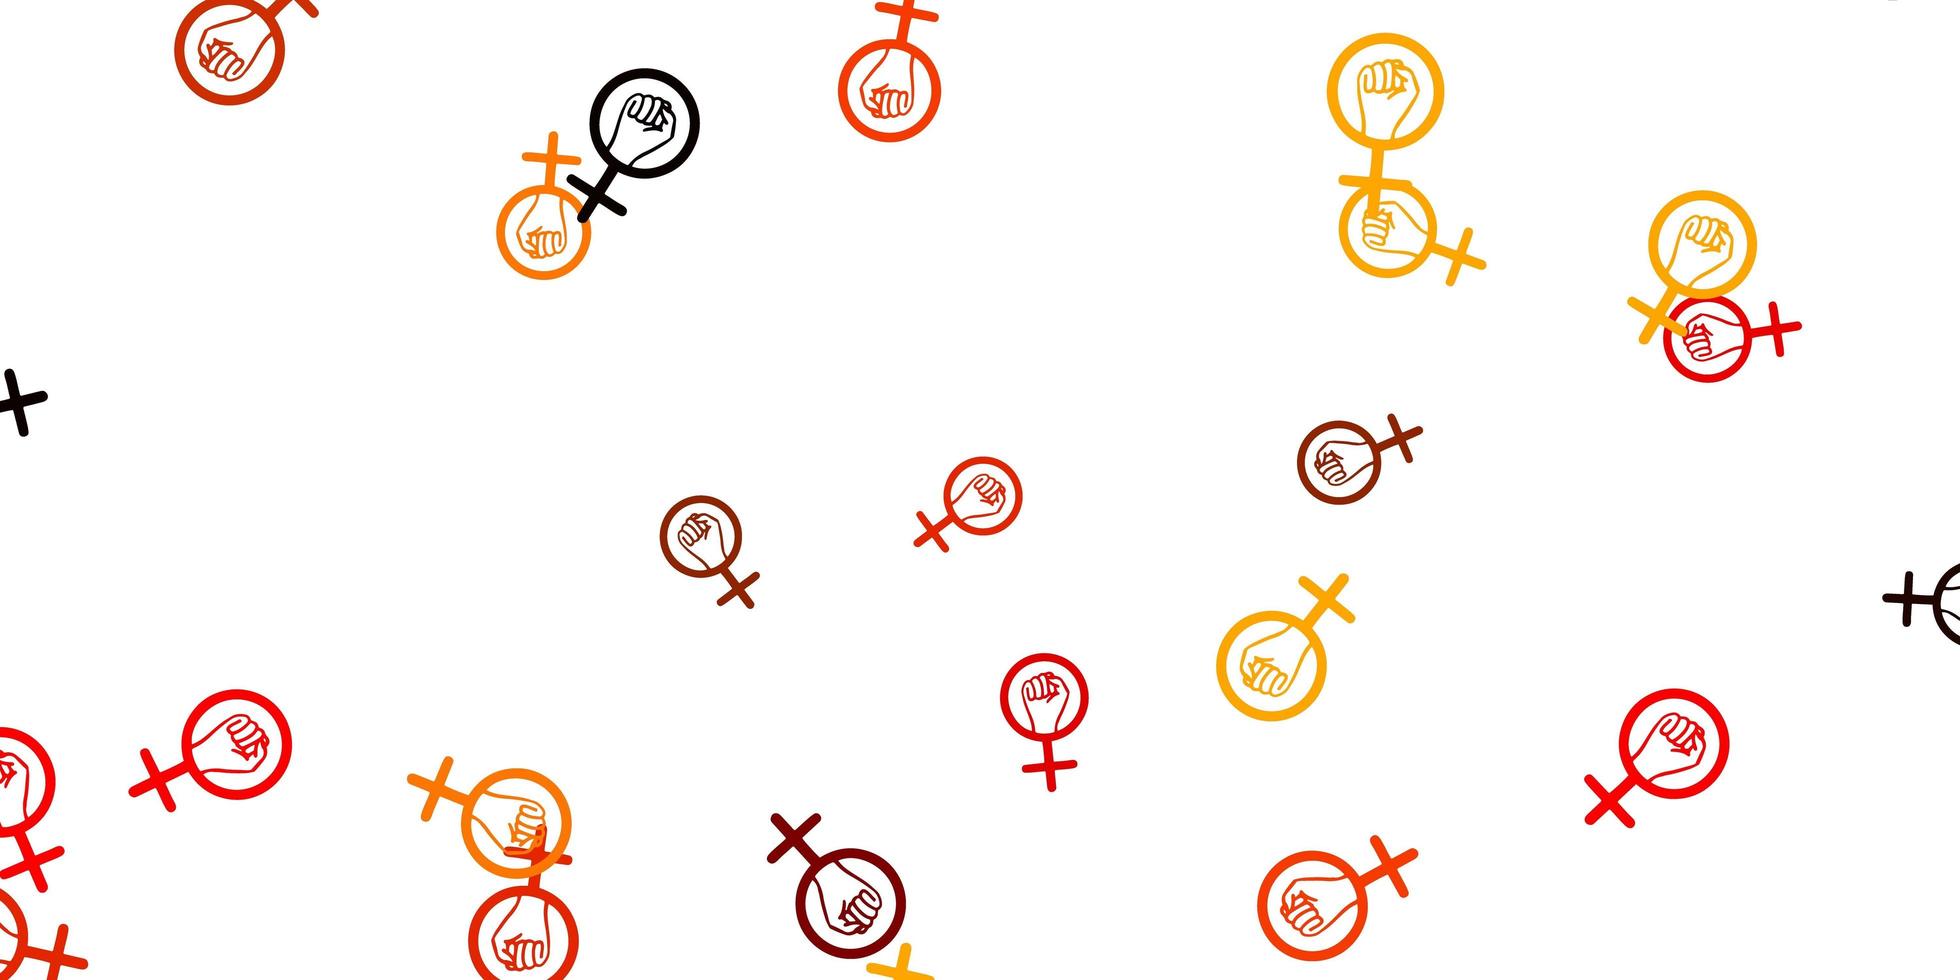 toile de fond de vecteur orange clair avec des symboles de puissance de femme